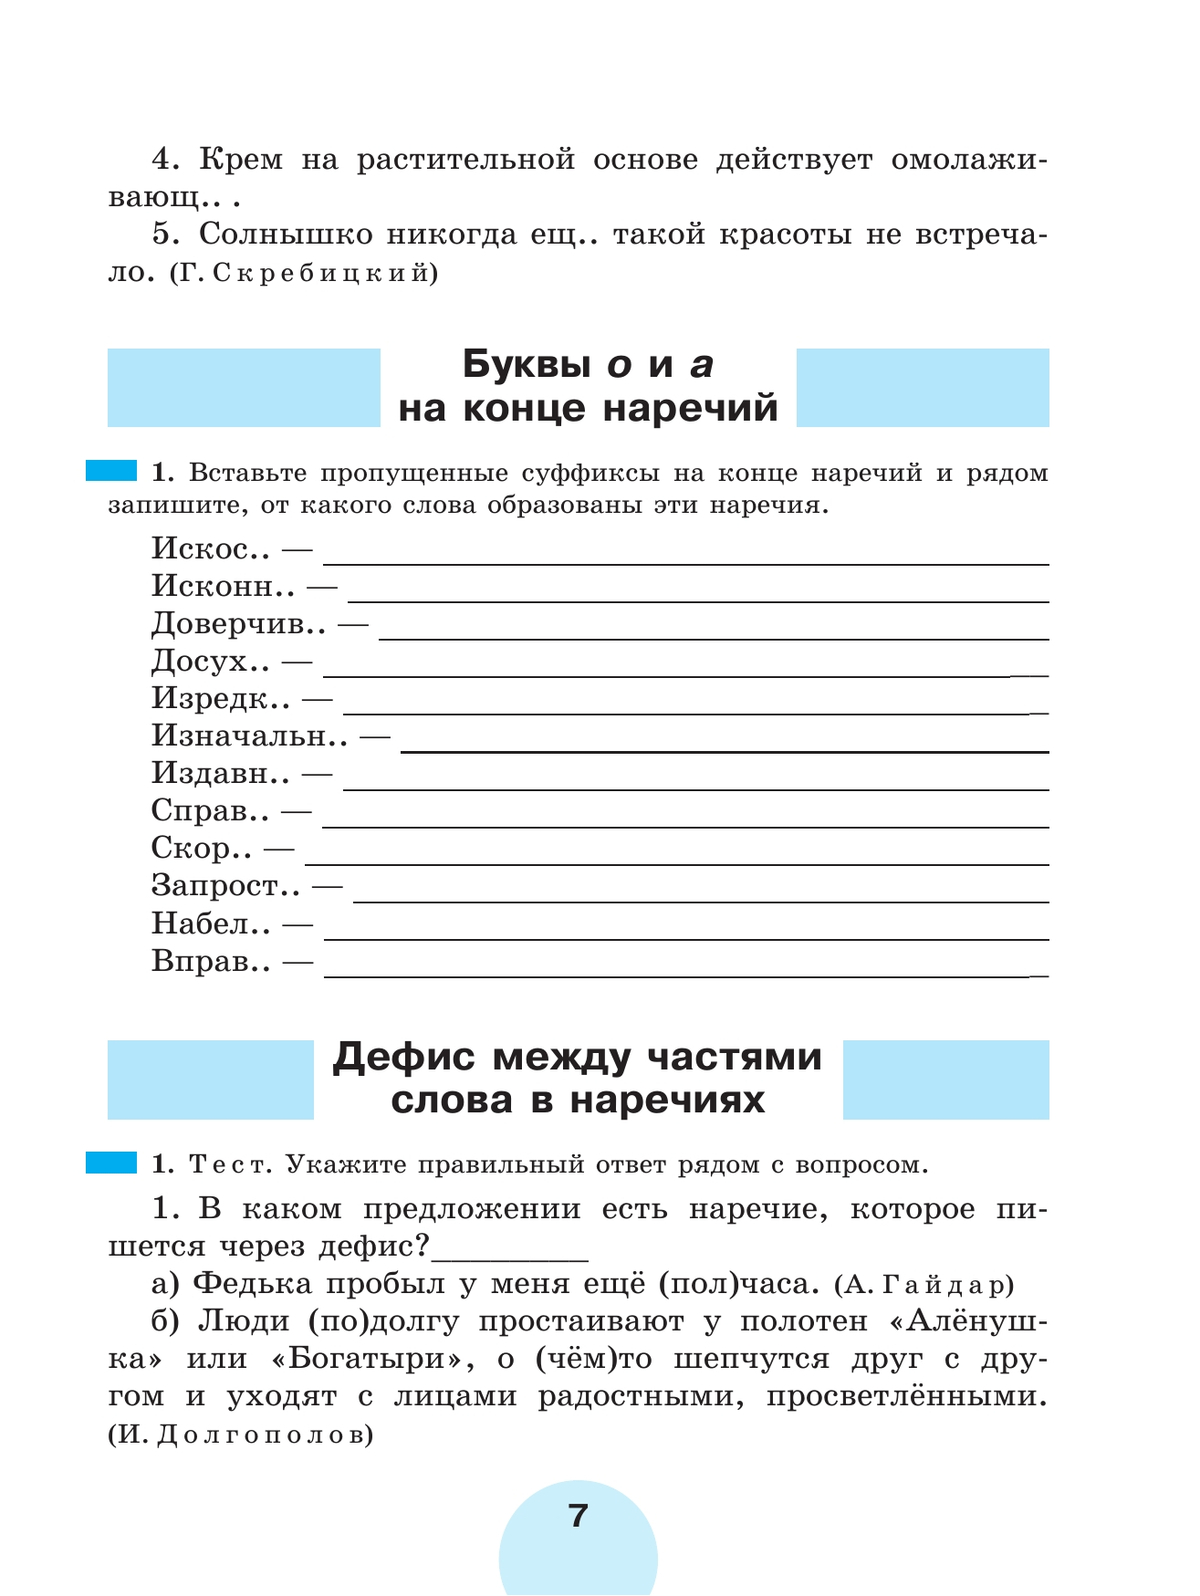 Русский язык. Рабочая тетрадь. 7 класс. В 2 ч. Часть 2 4